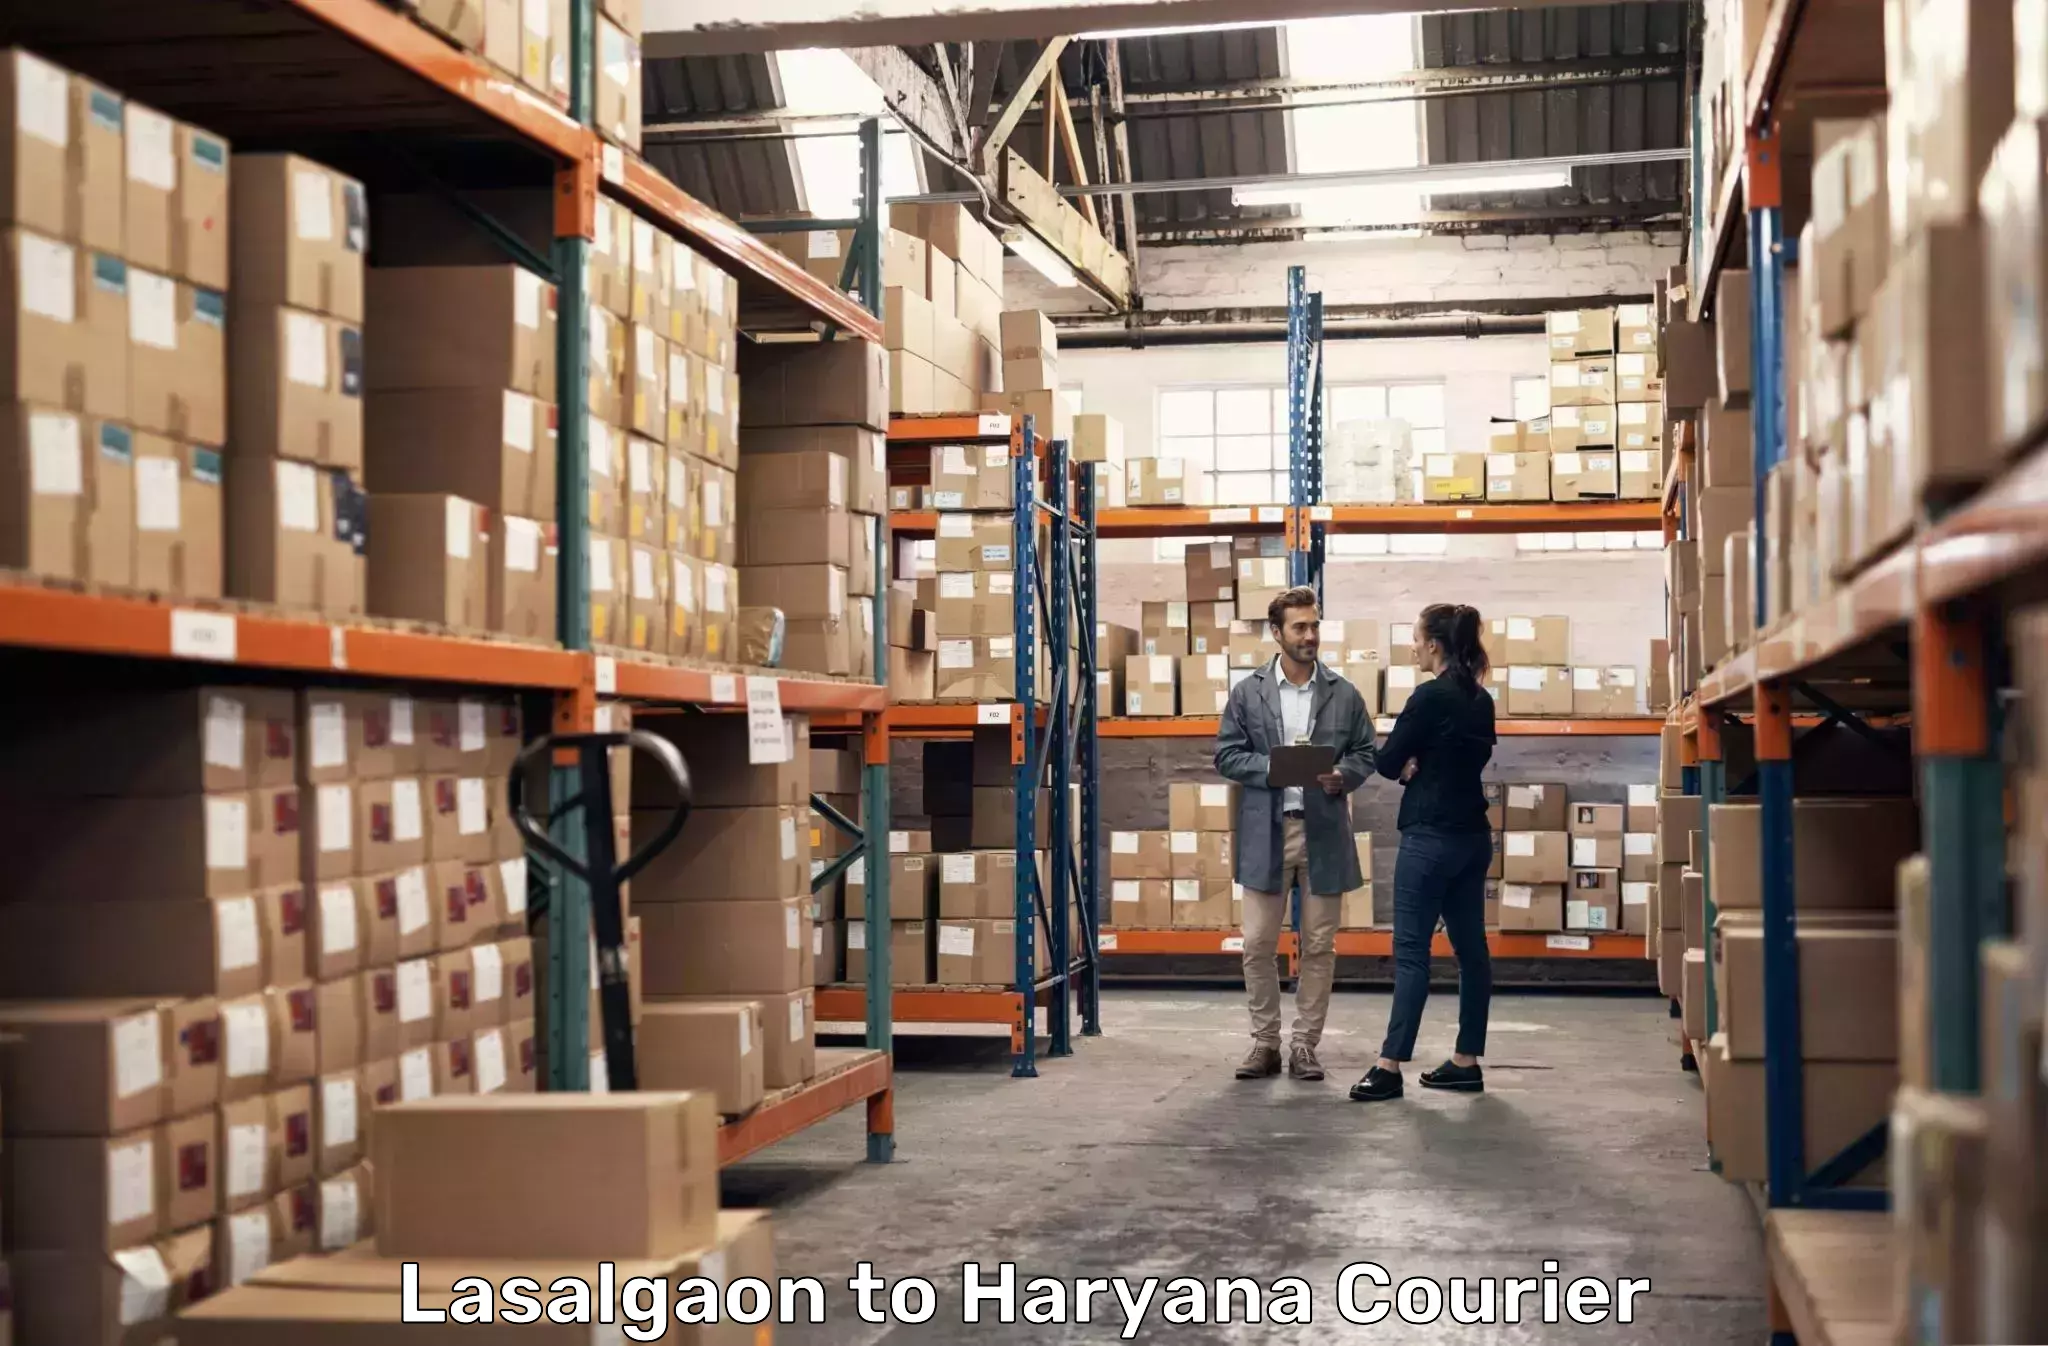 High-capacity parcel service in Lasalgaon to Chaudhary Charan Singh Haryana Agricultural University Hisar